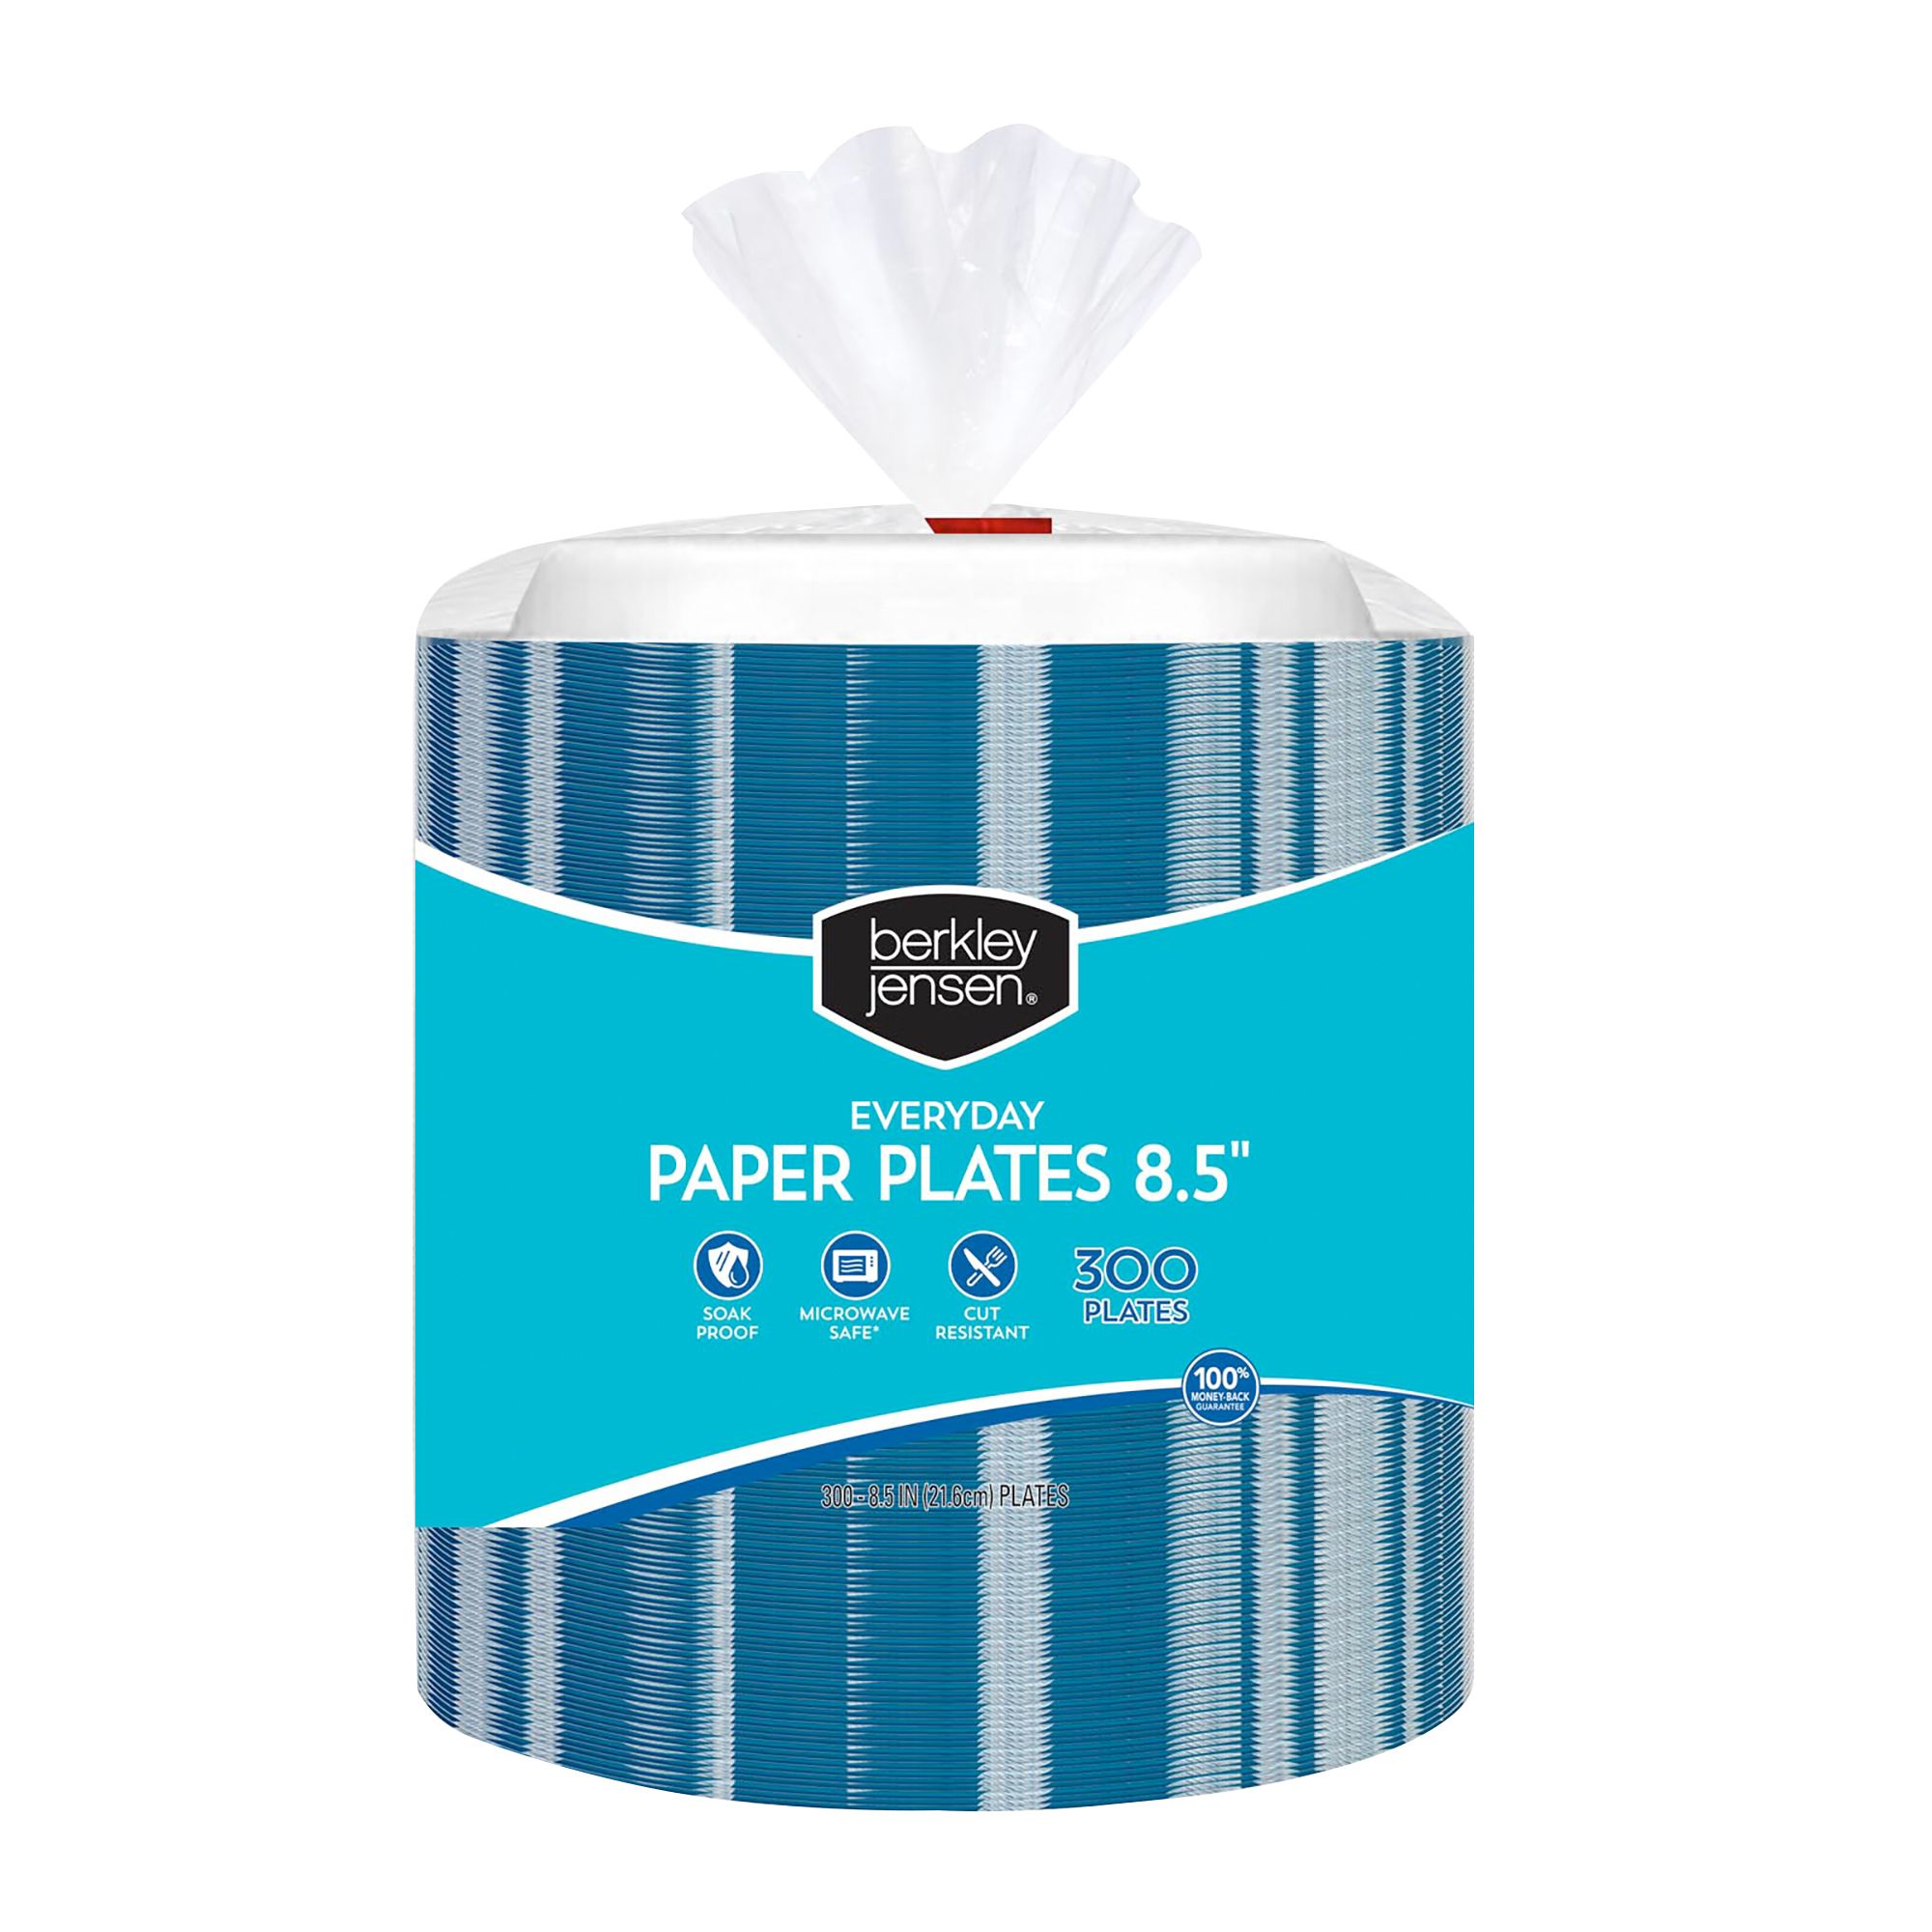 ComfortPlus™ Toilet Paper